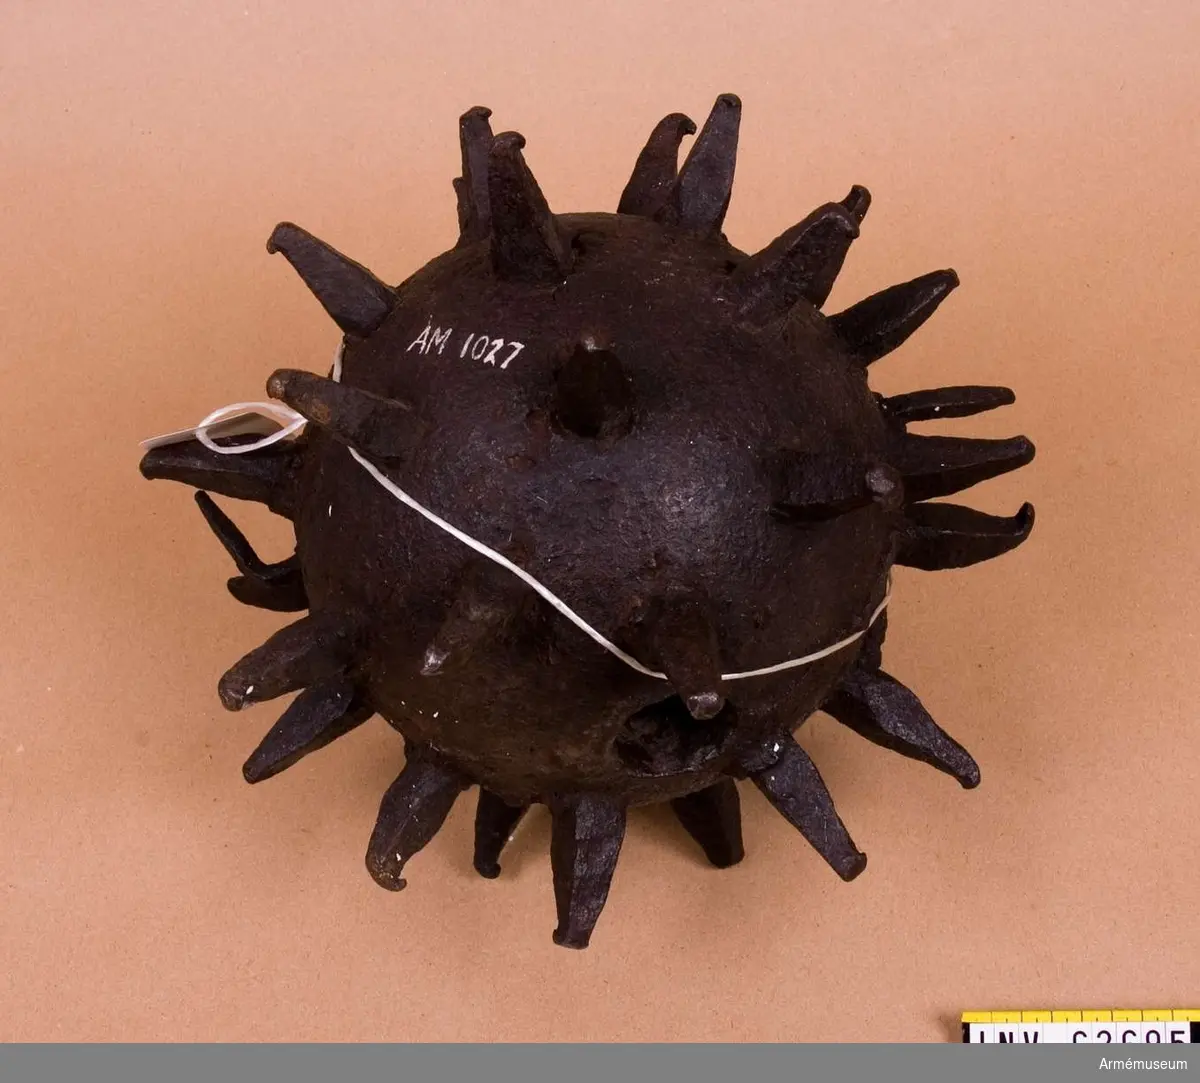 Grupp F II.
20-pundig bomb av järn försedd med spetsar.